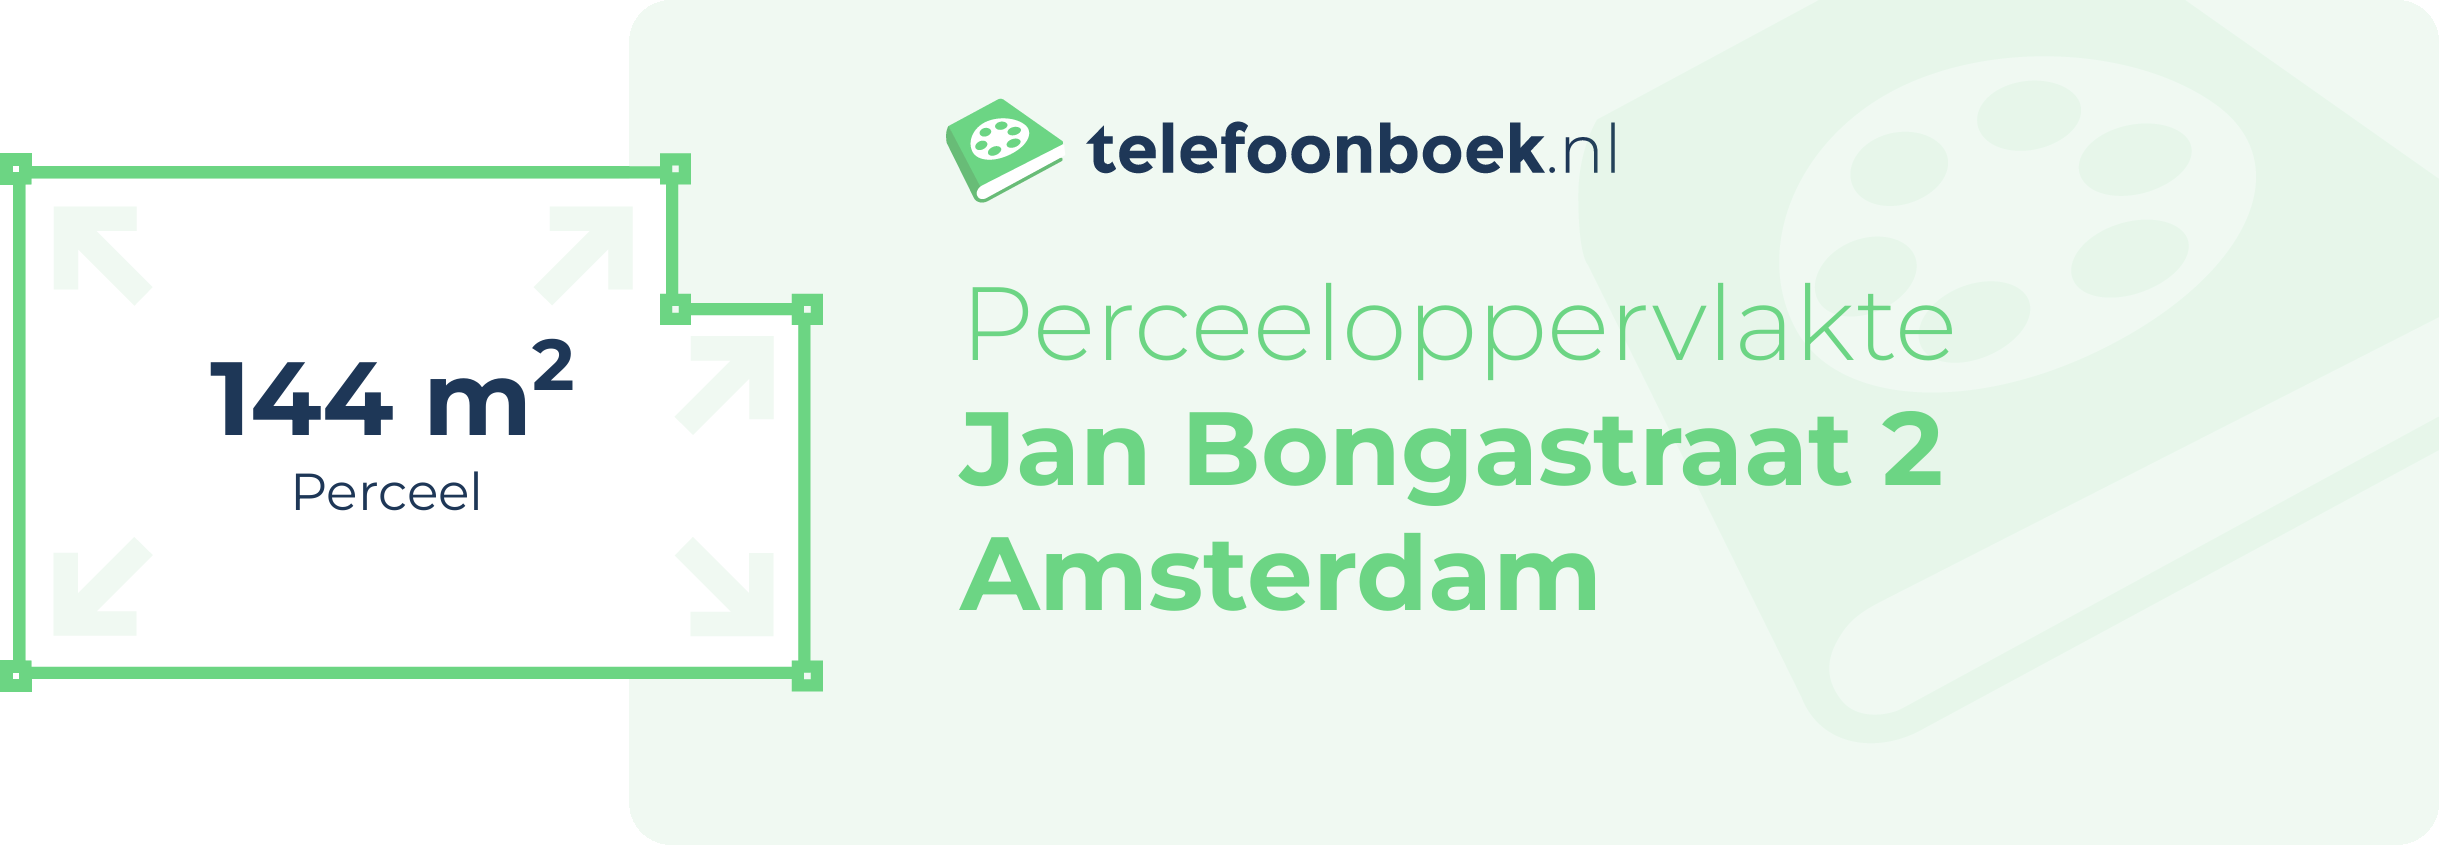 Perceeloppervlakte Jan Bongastraat 2 Amsterdam